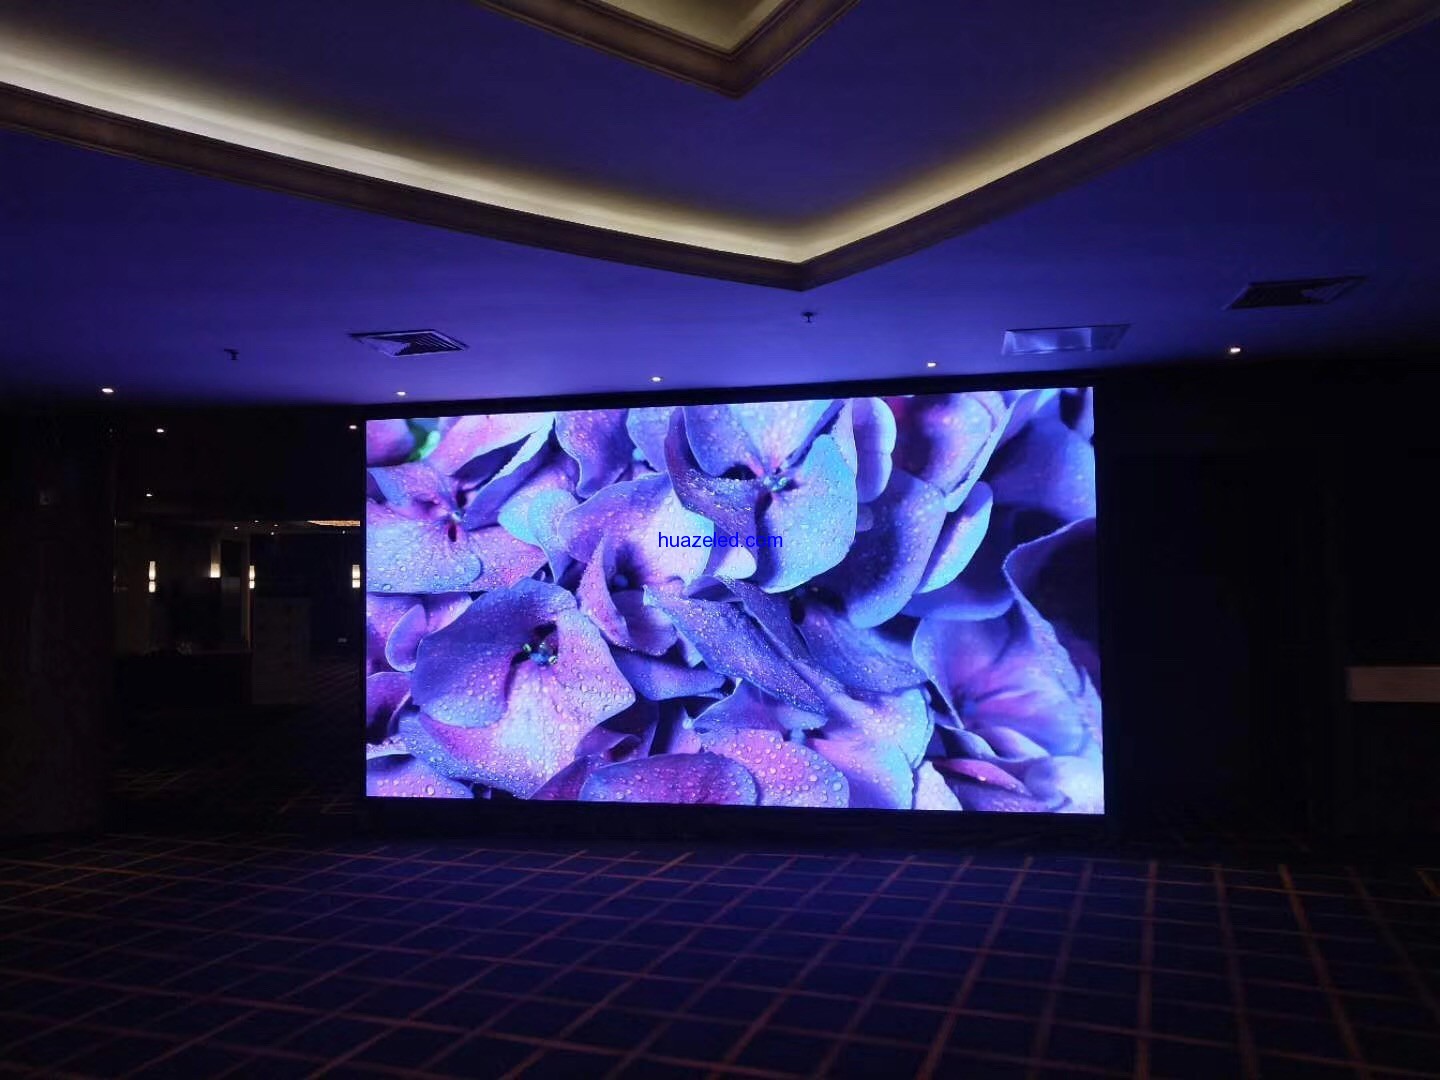 上海皇冠假日酒店p2.5高清LED顯示屏